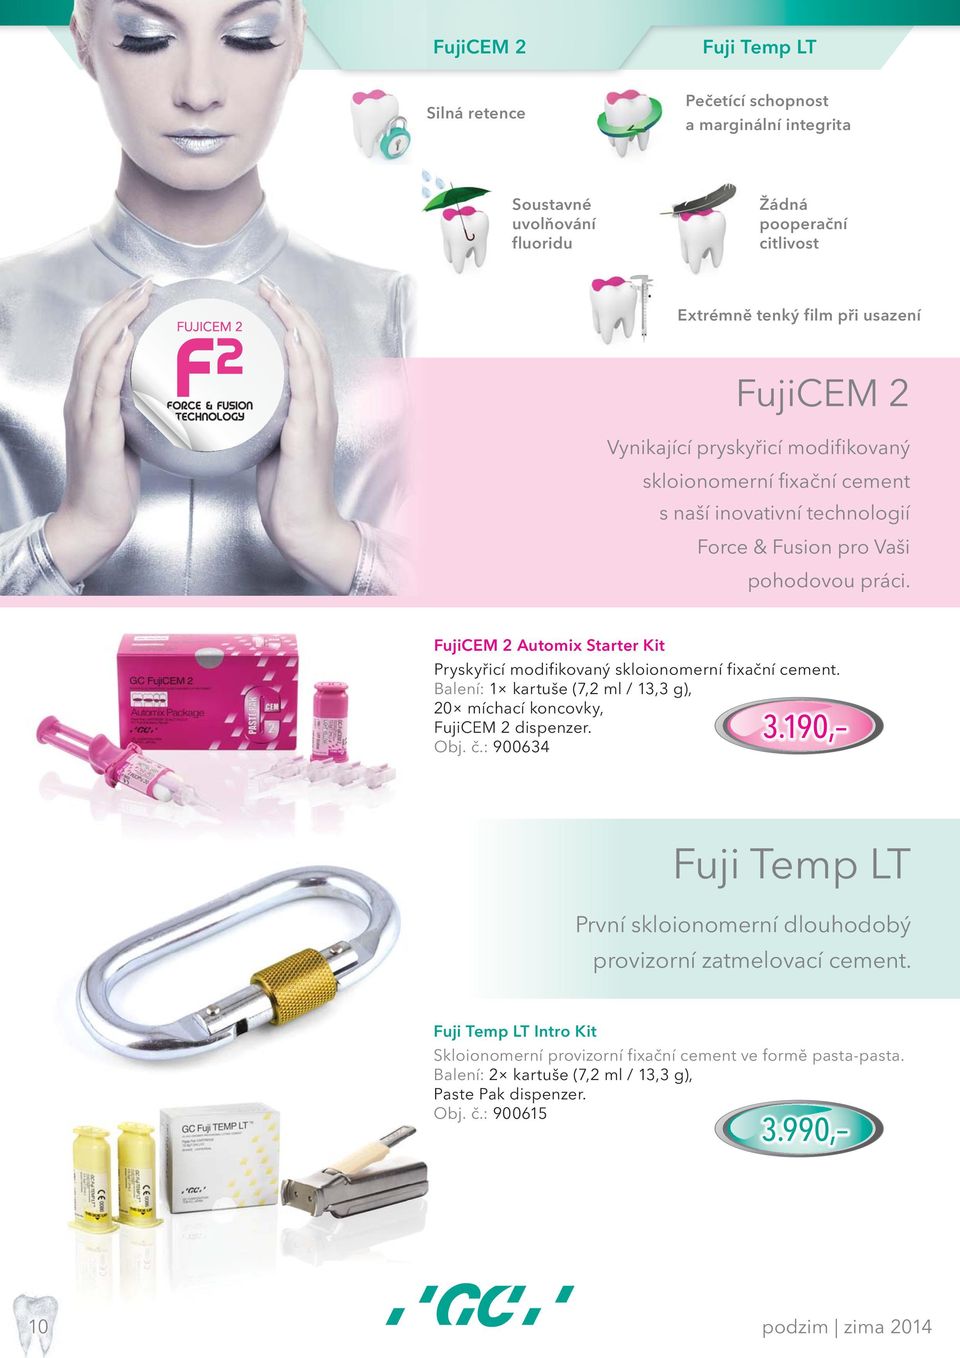 FujiCEM 2 Automix Starter Kit Pryskyřicí modifikovaný skloionomerní fixační cement. Balení: 1 kartuše (7,2 ml / 13,3 g), 20 míchací koncovky, FujiCEM 2 dispenzer. Obj. č.: 900634 3.